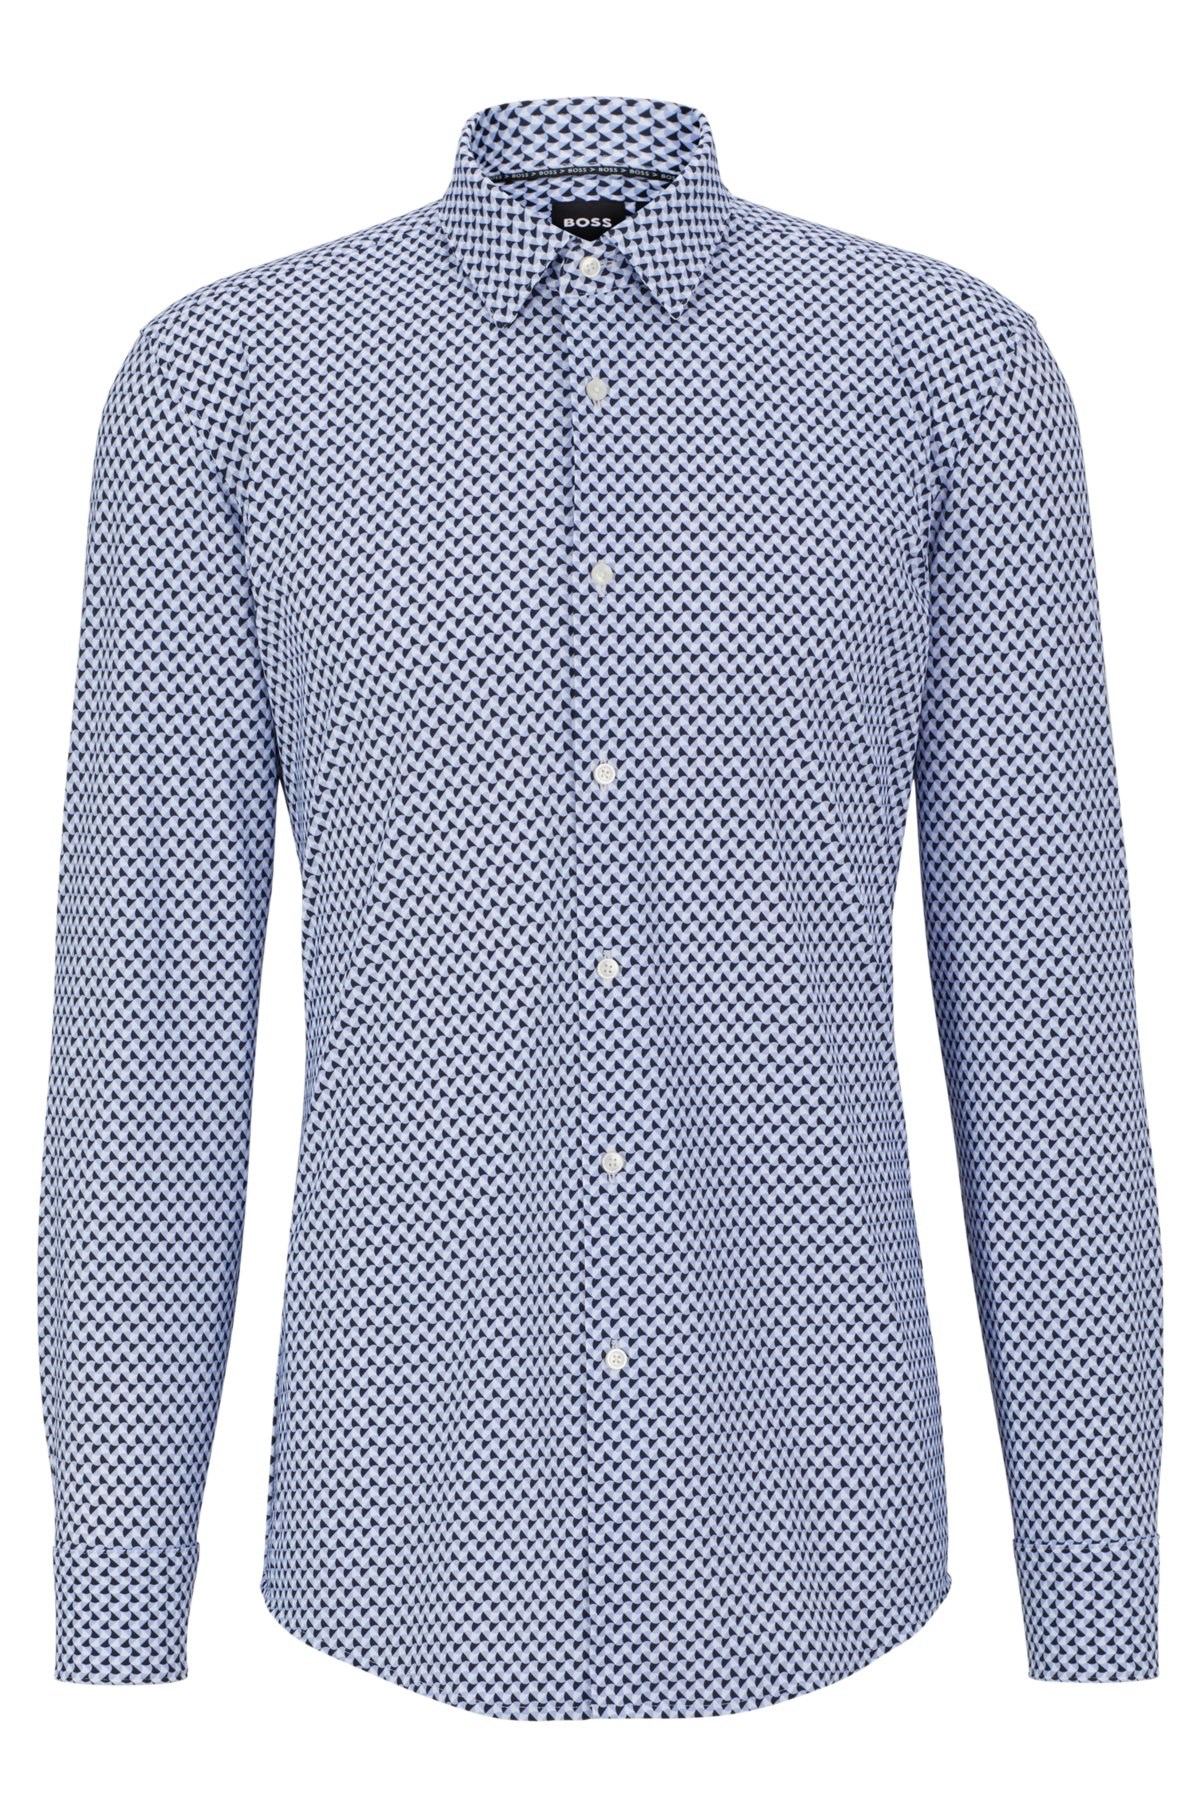 Leeds Becks pijpleiding BOSS - Slim-fit overhemd van hoogwaardige stretchjersey met print